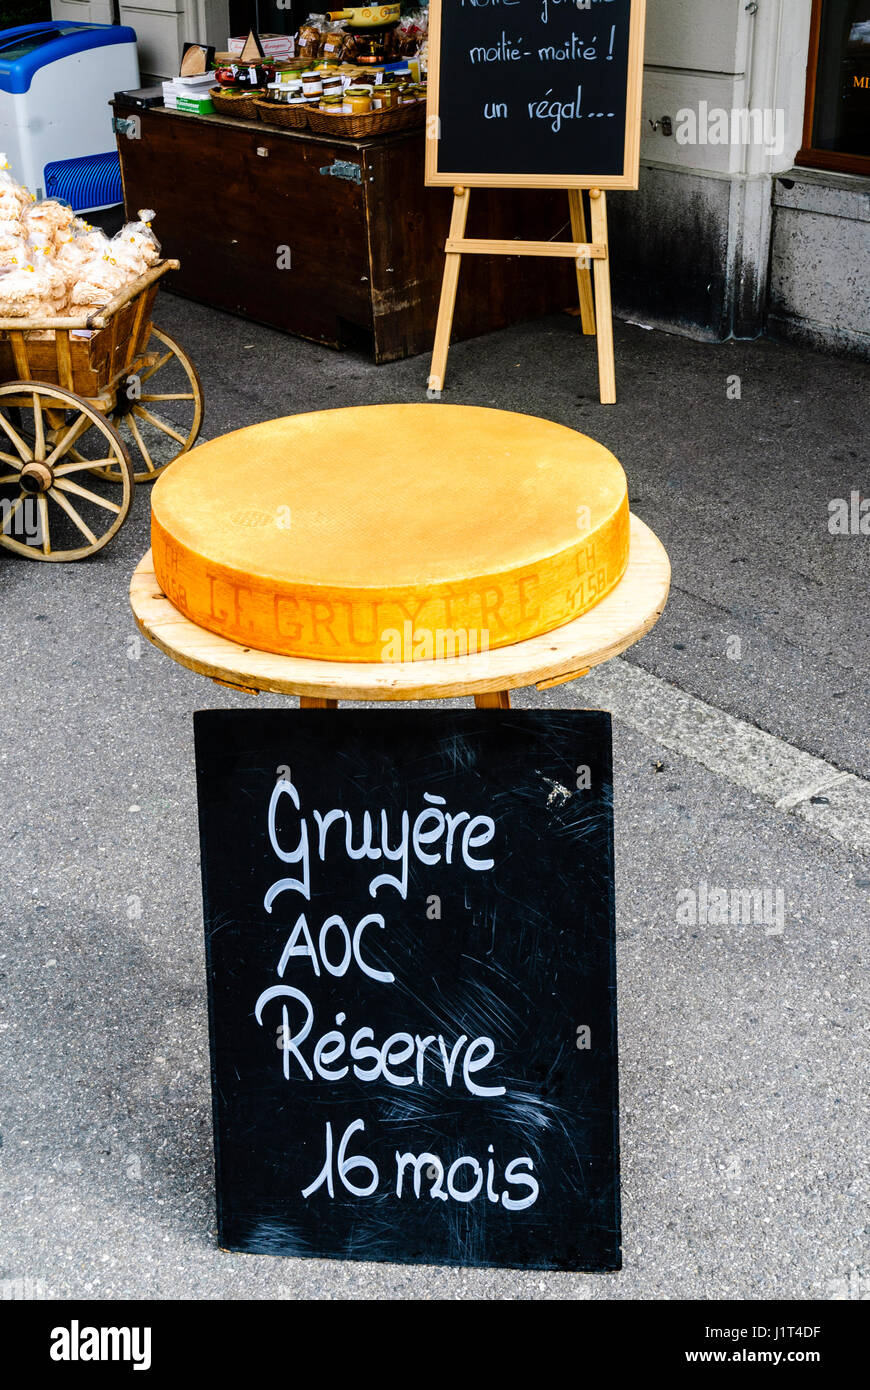 Une roue de fromage gruyère géant à l'extérieur d'un deli à Vevey, Suisse Banque D'Images